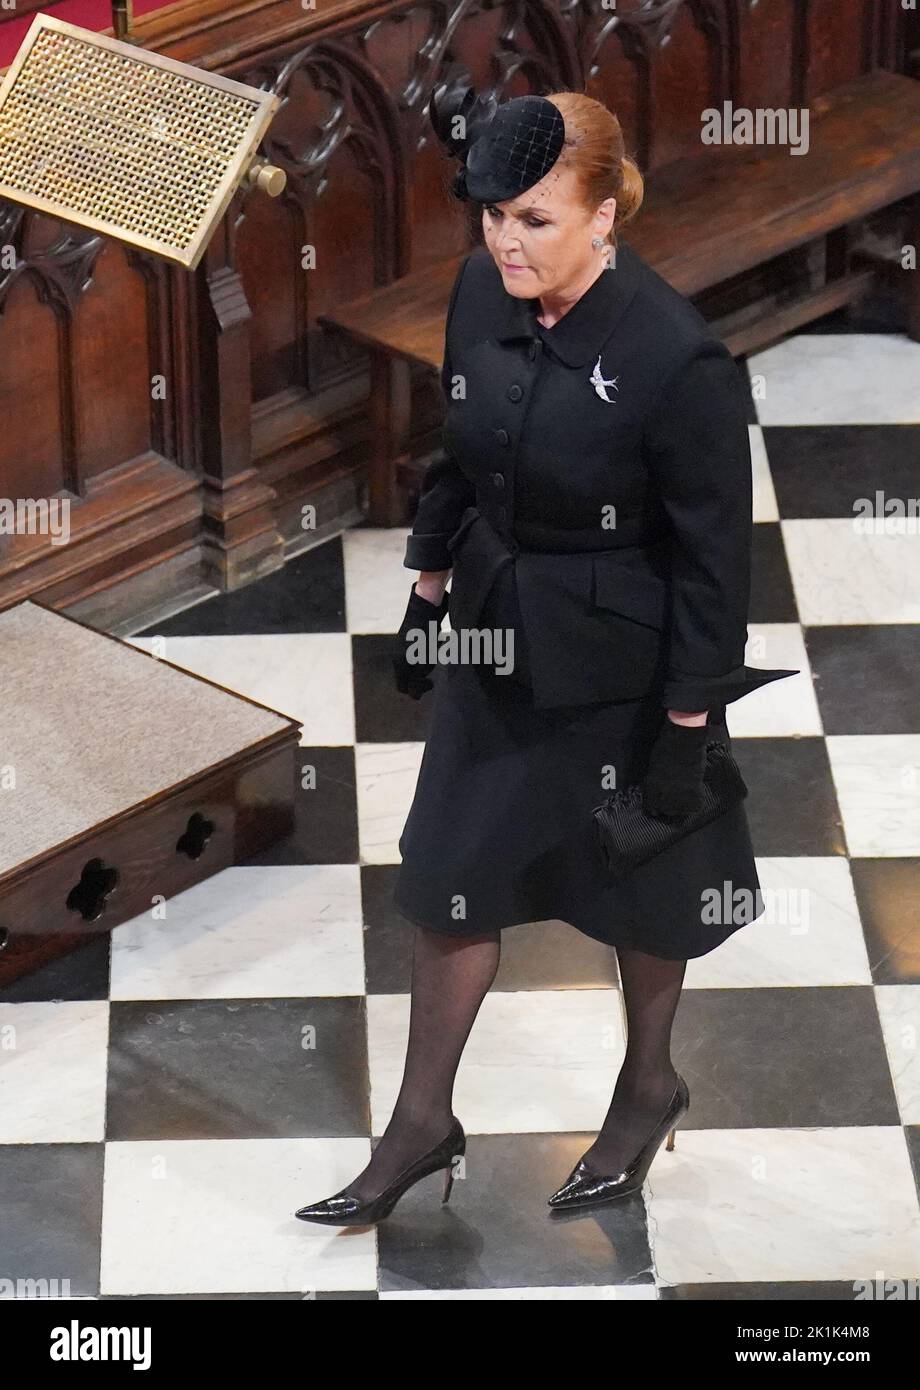 Sarah, Duchessa di York, arriva al funerale di Stato della Regina Elisabetta II, tenuto presso l'Abbazia di Westminster, Londra. Data immagine: Lunedì 19 settembre 2022. Foto Stock